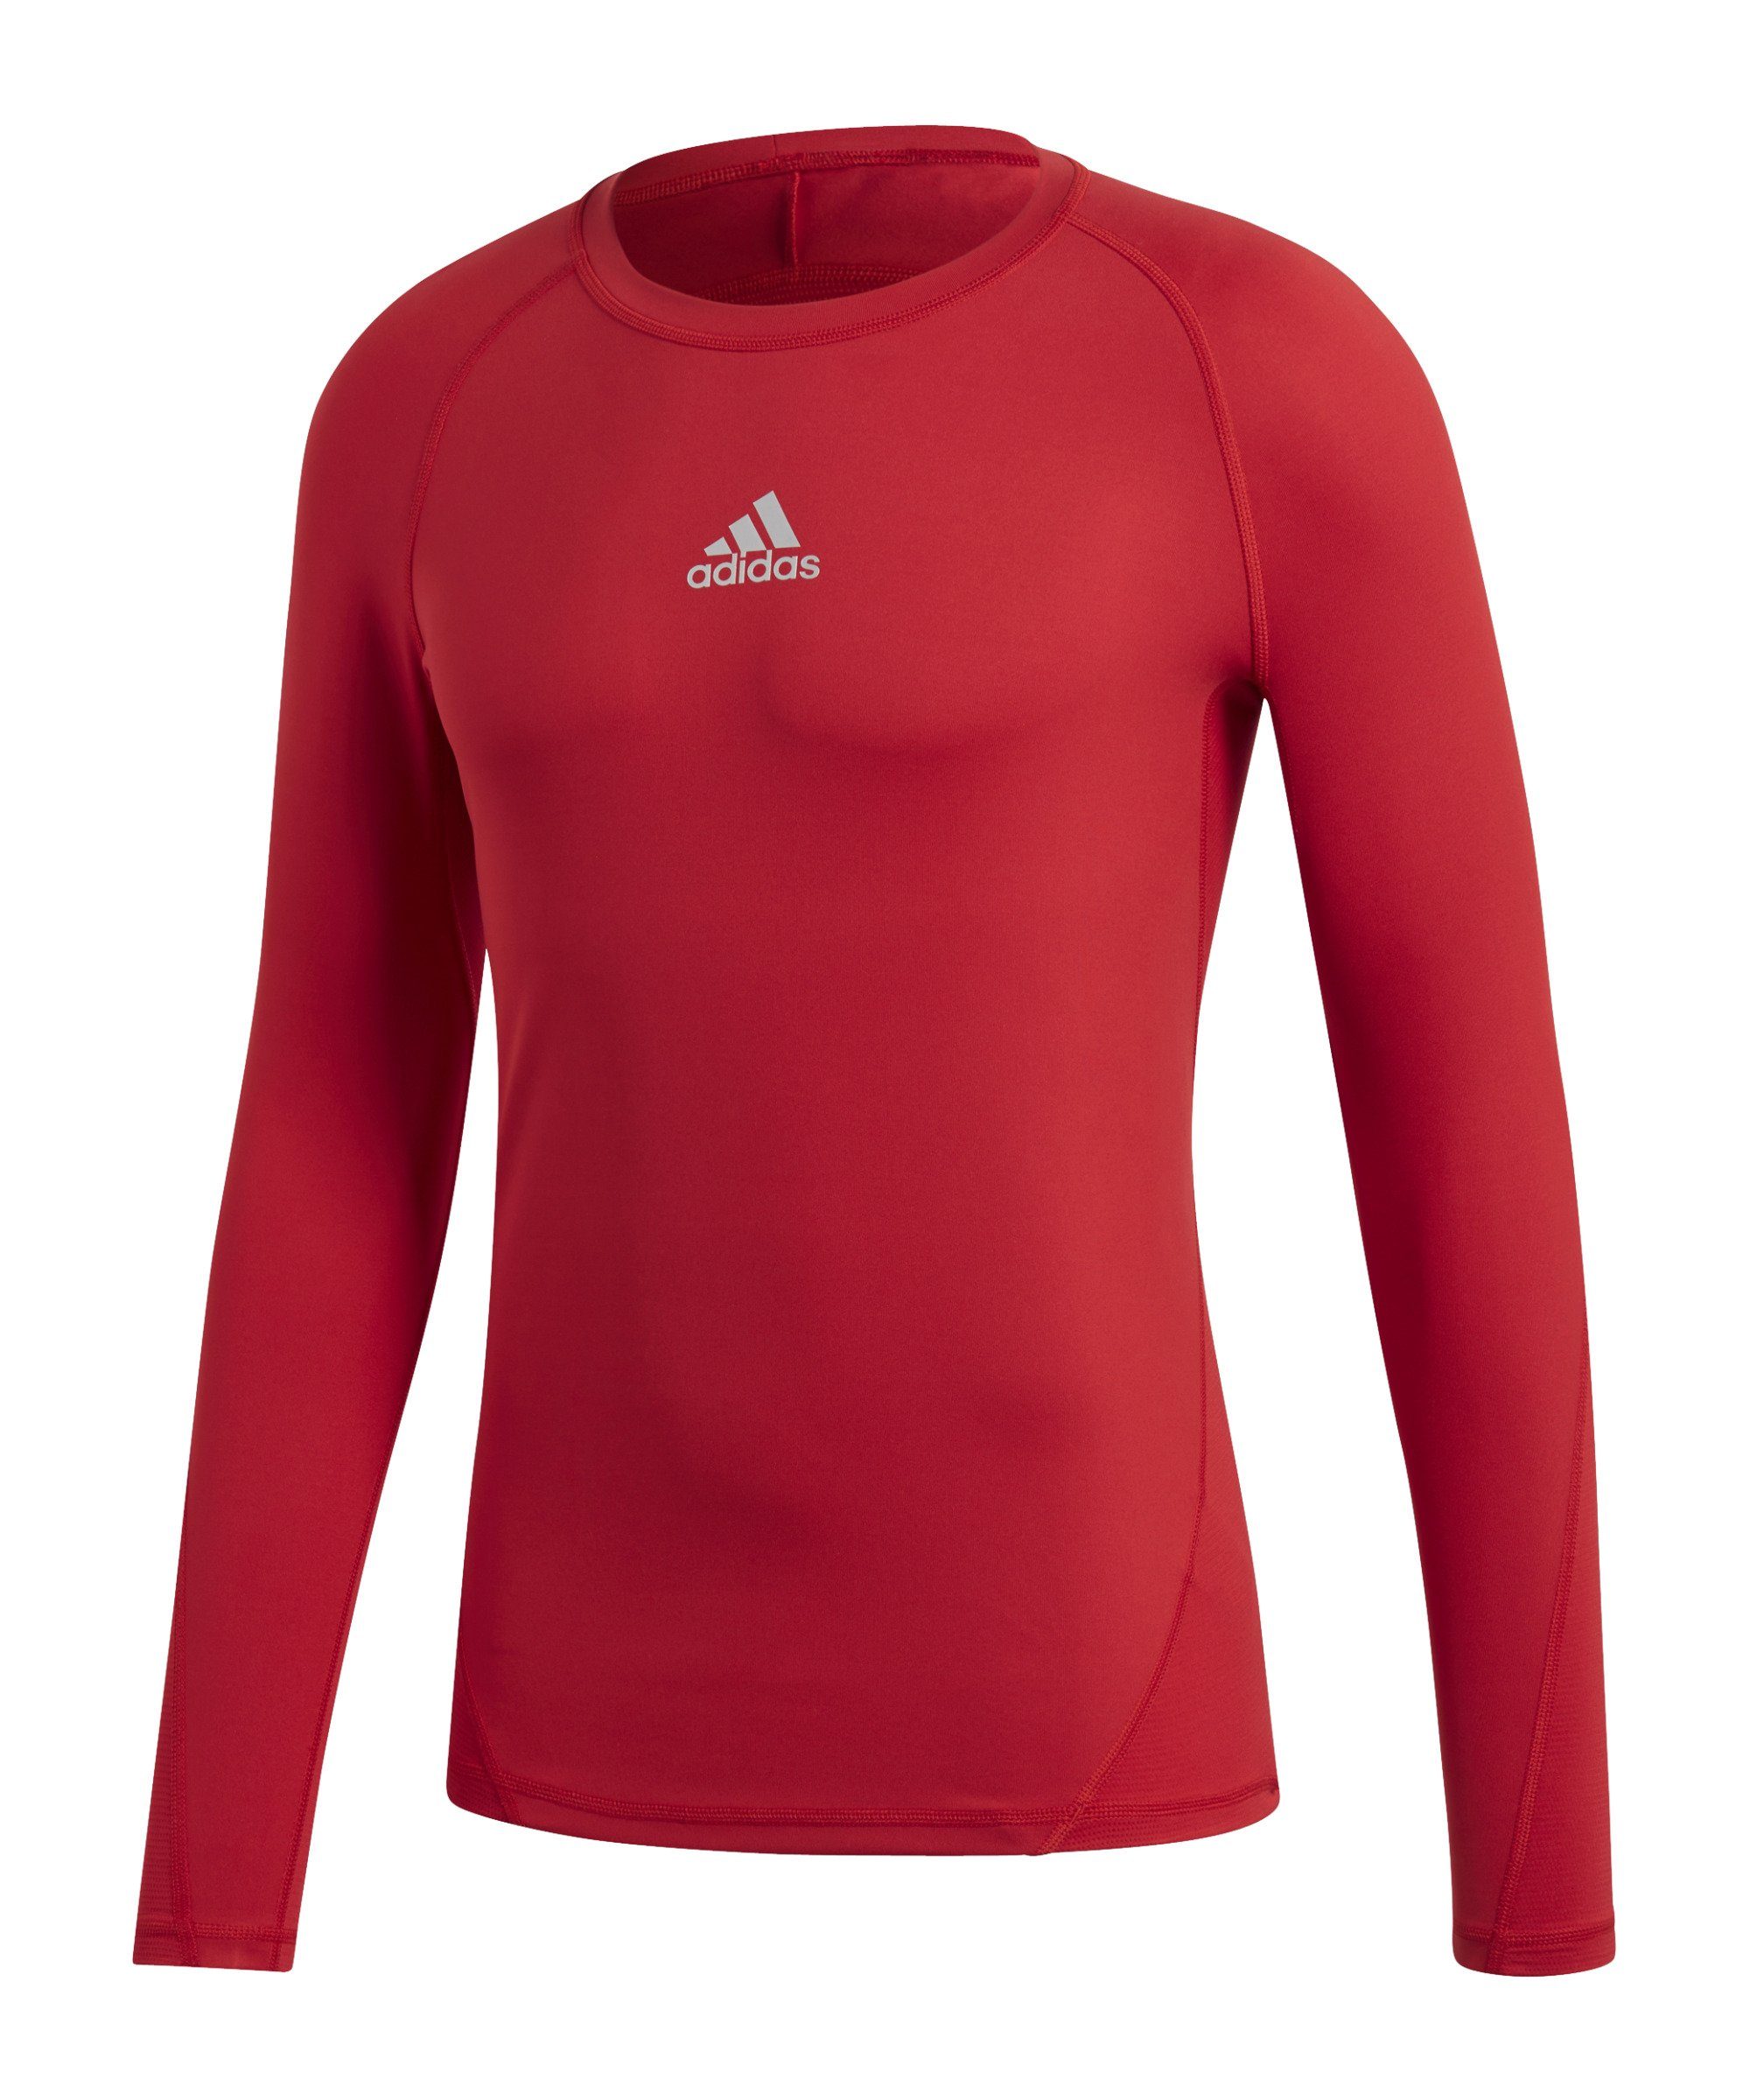 adidas Performance Funktionsshirt Alphaskin Sport Shirt Longsleeve default rot